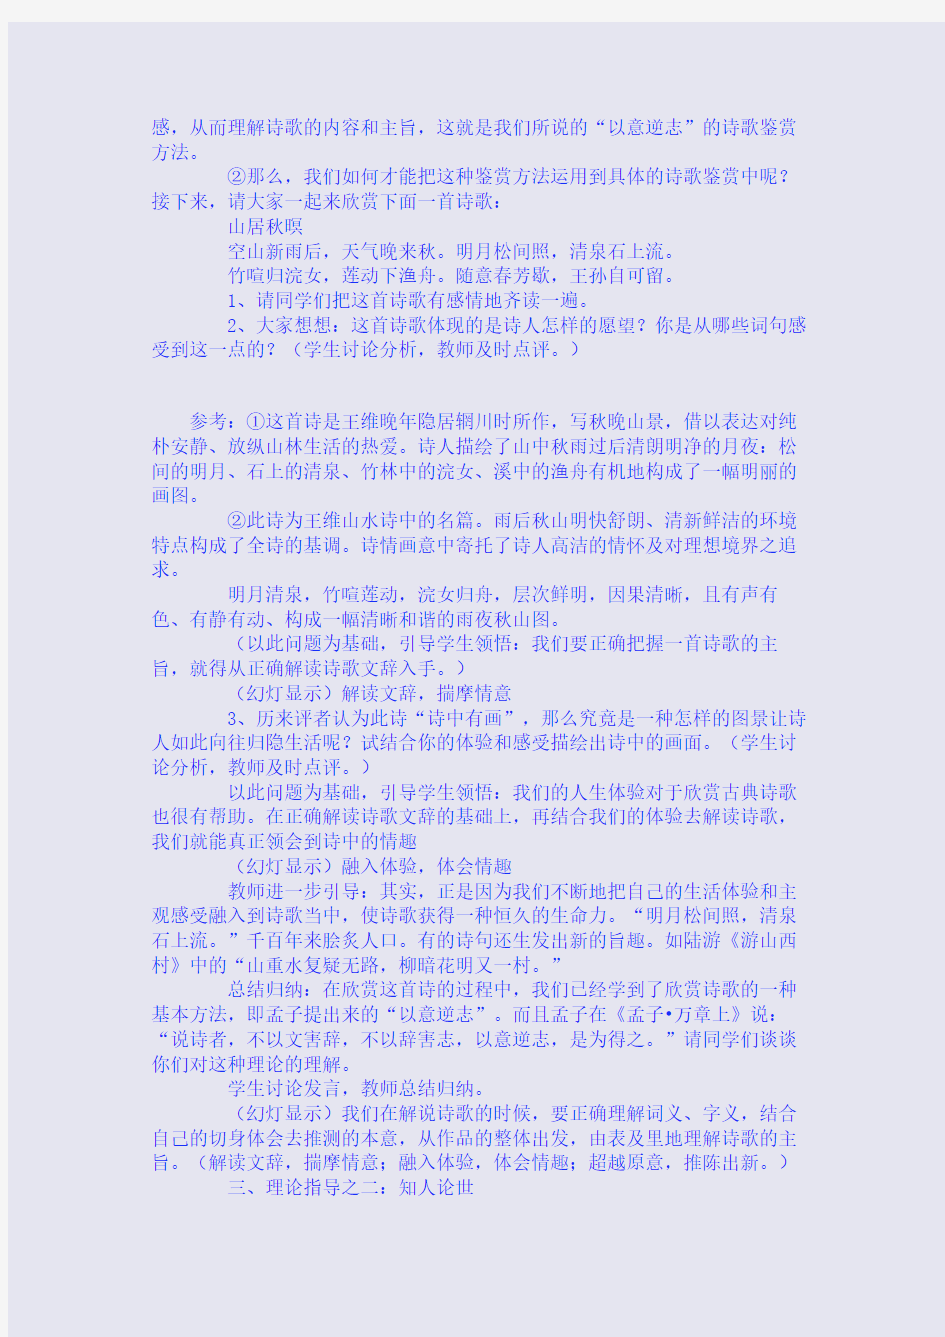 高中语文《中国古代诗歌散文欣赏》教案资料(有待整理利用)